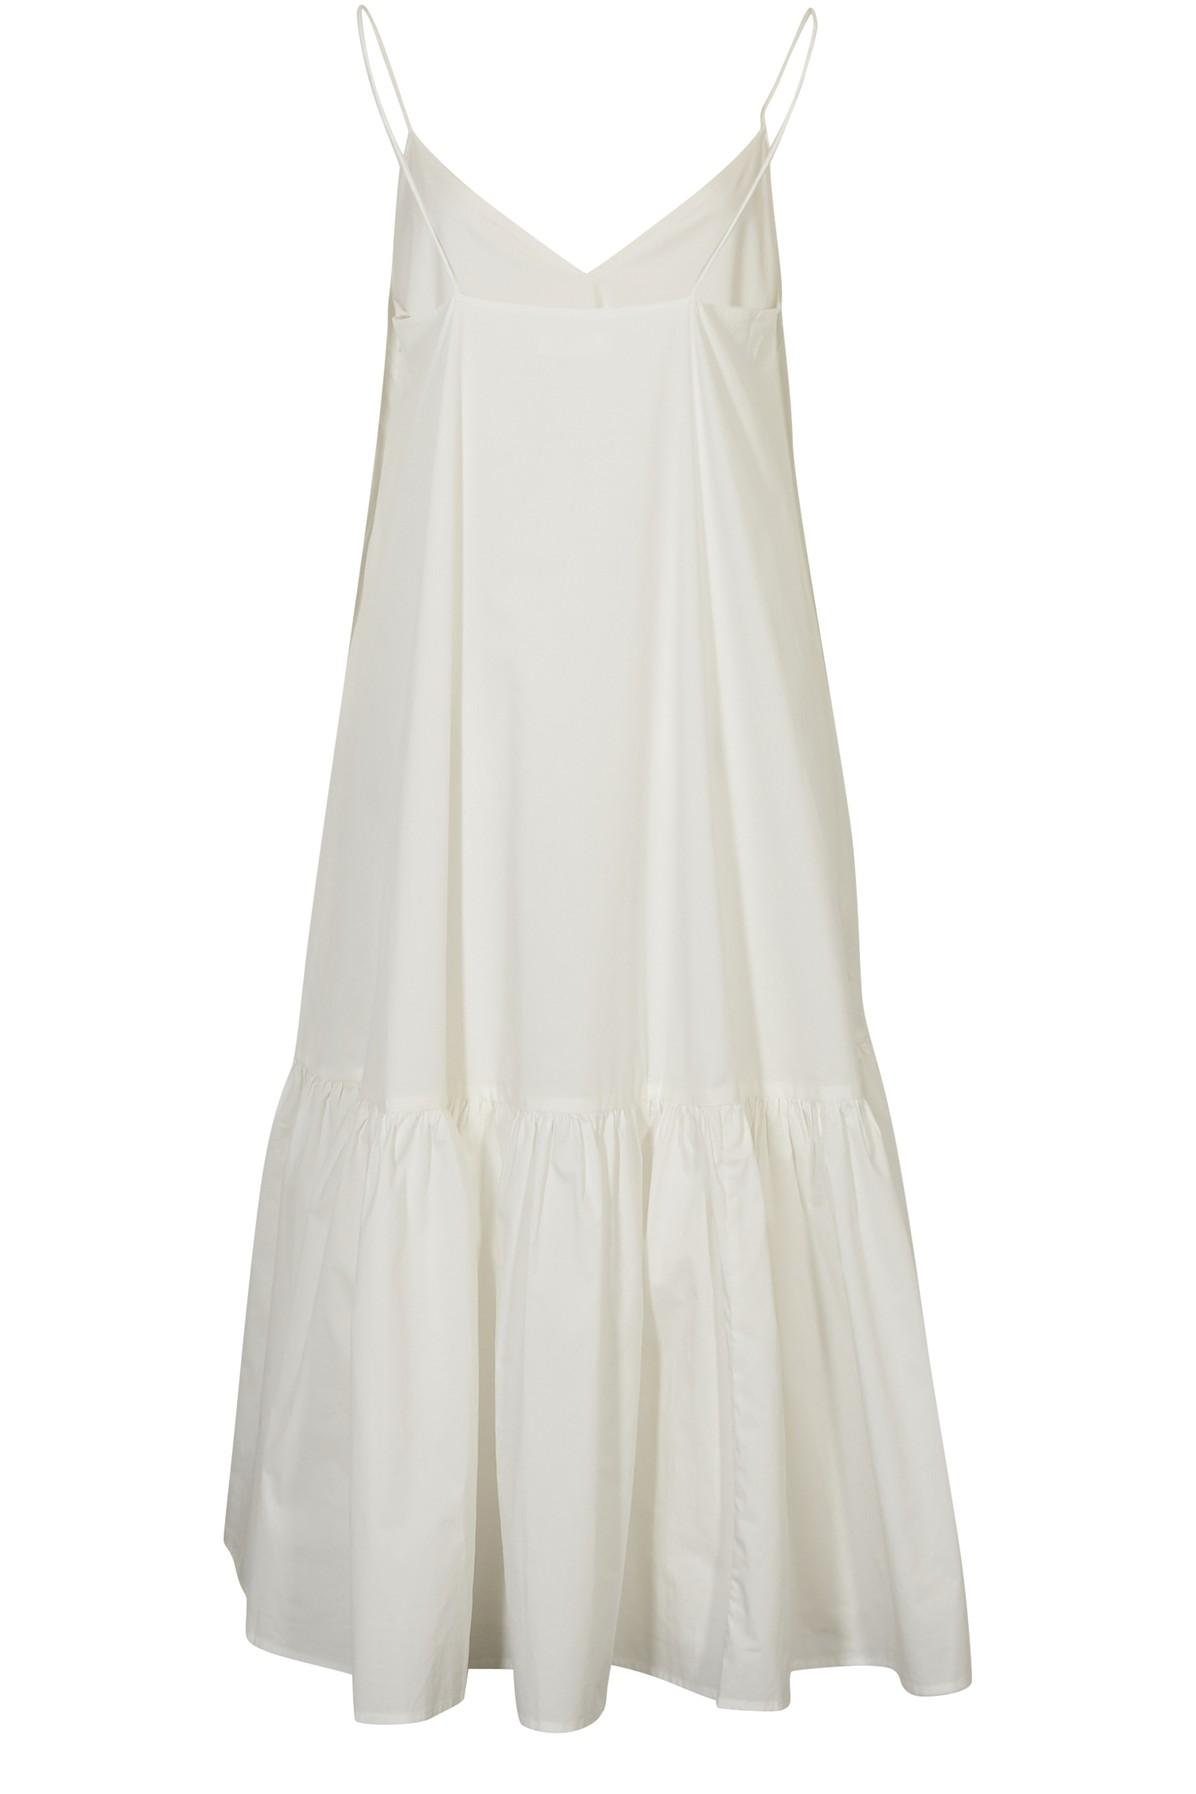 Anine Bing Kleid Averie in Weiß | Lyst DE